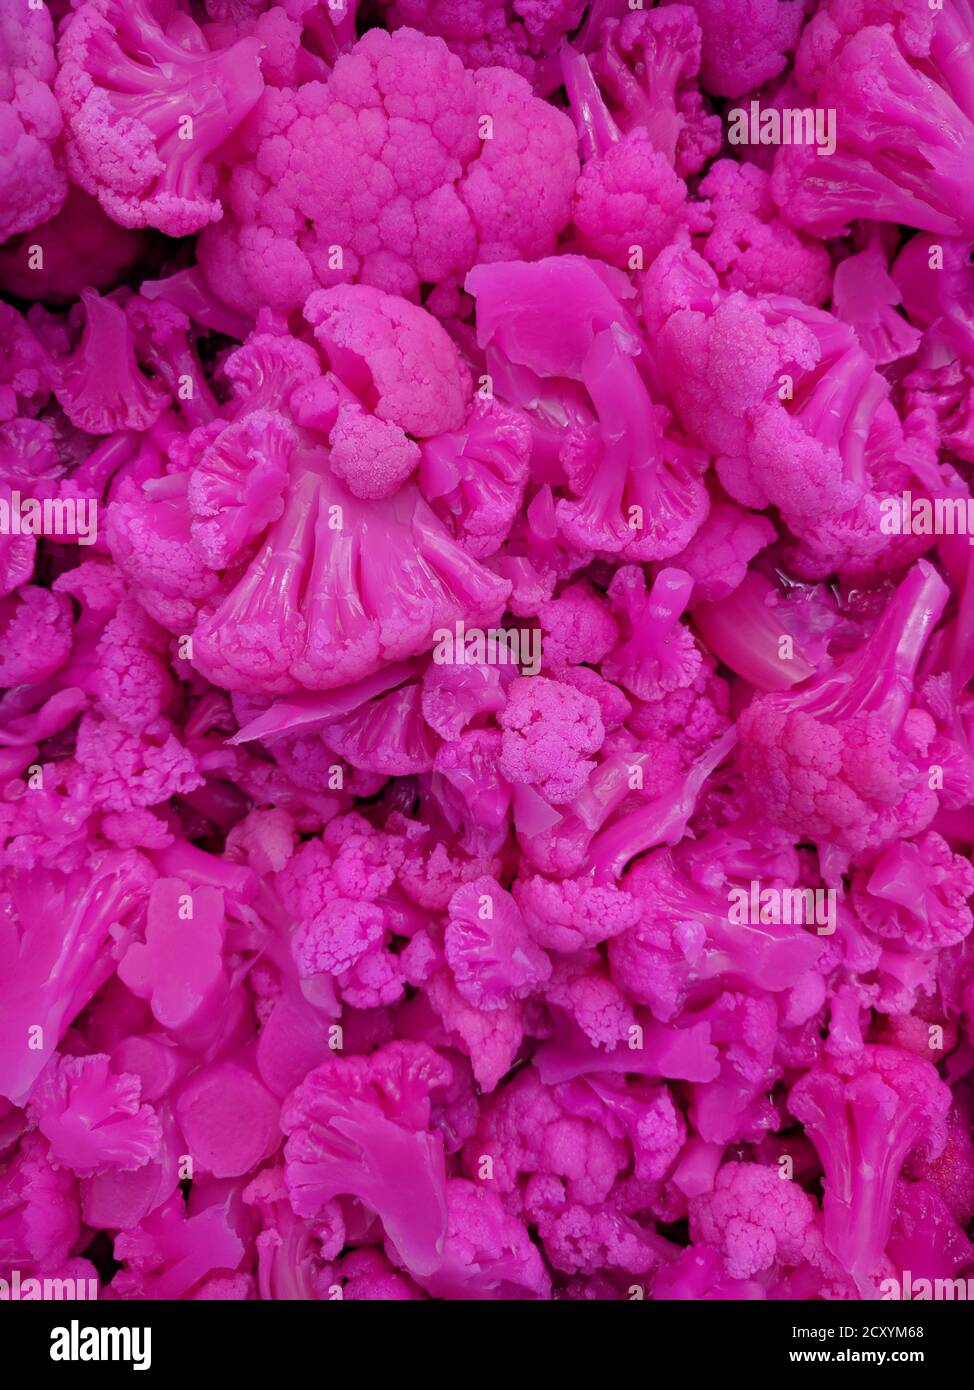 Le chou-fleur rose fucsia remplit l'écran Banque D'Images